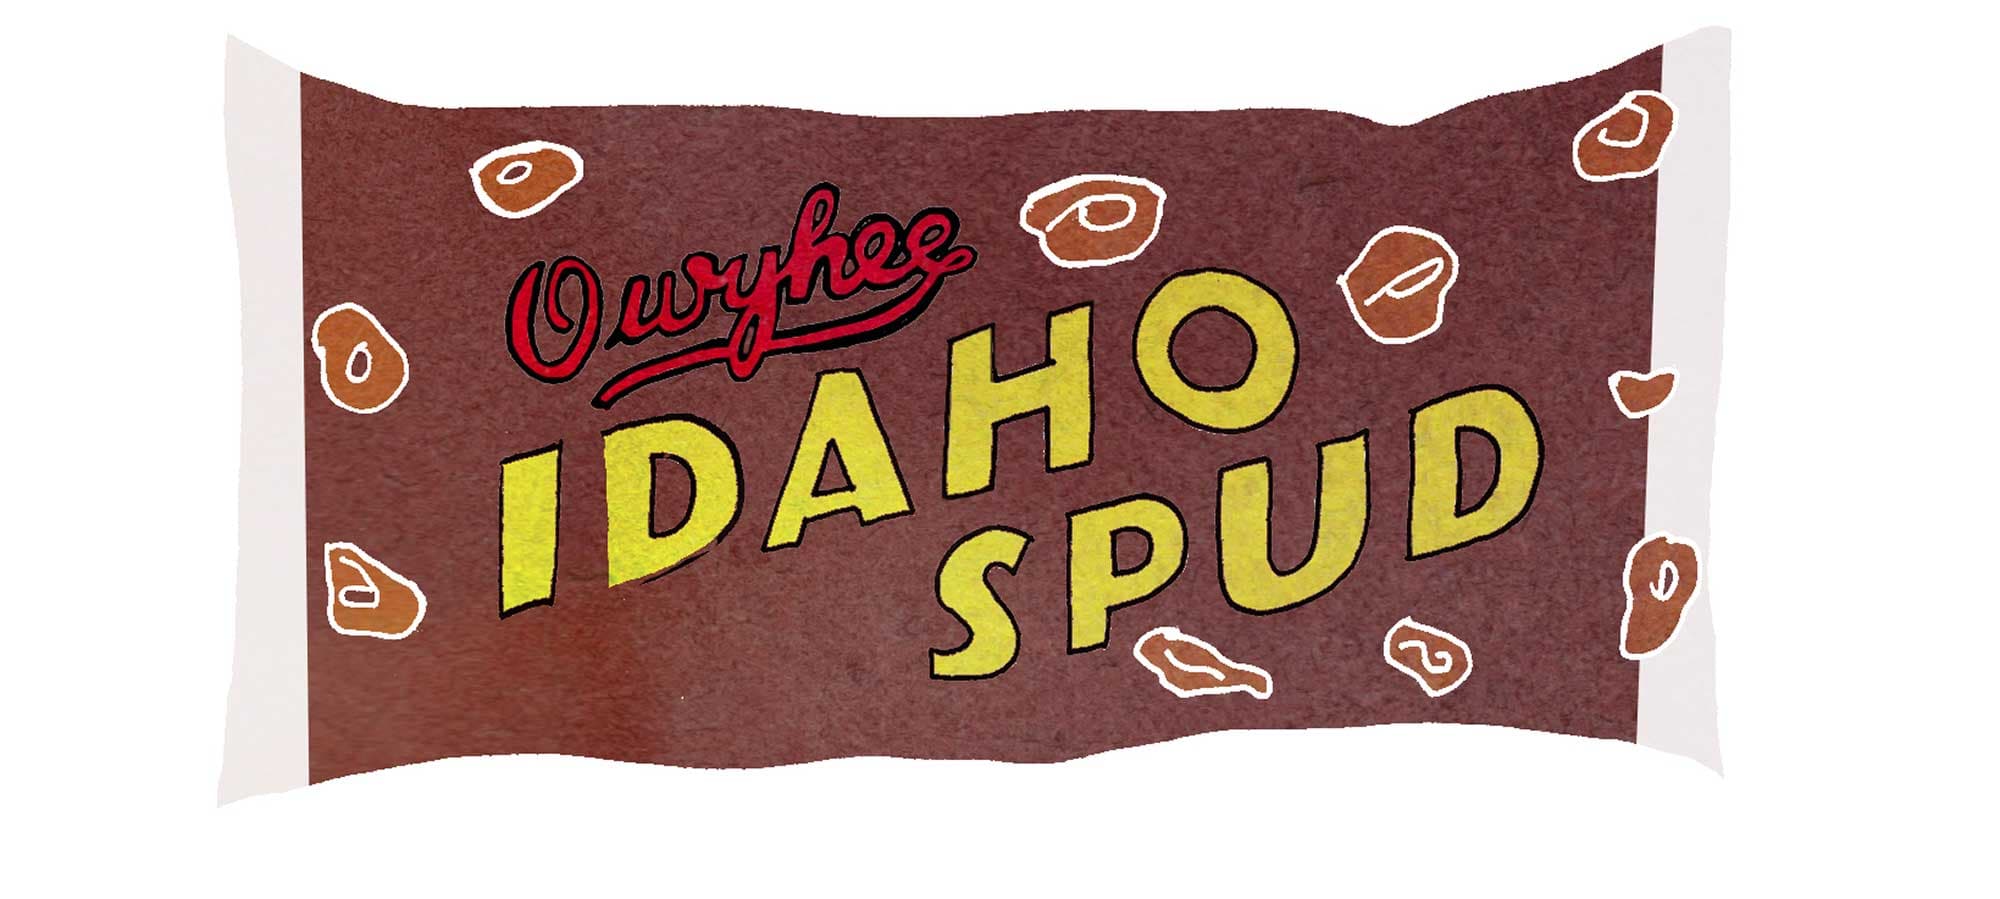 Idaho: Idaho Spud